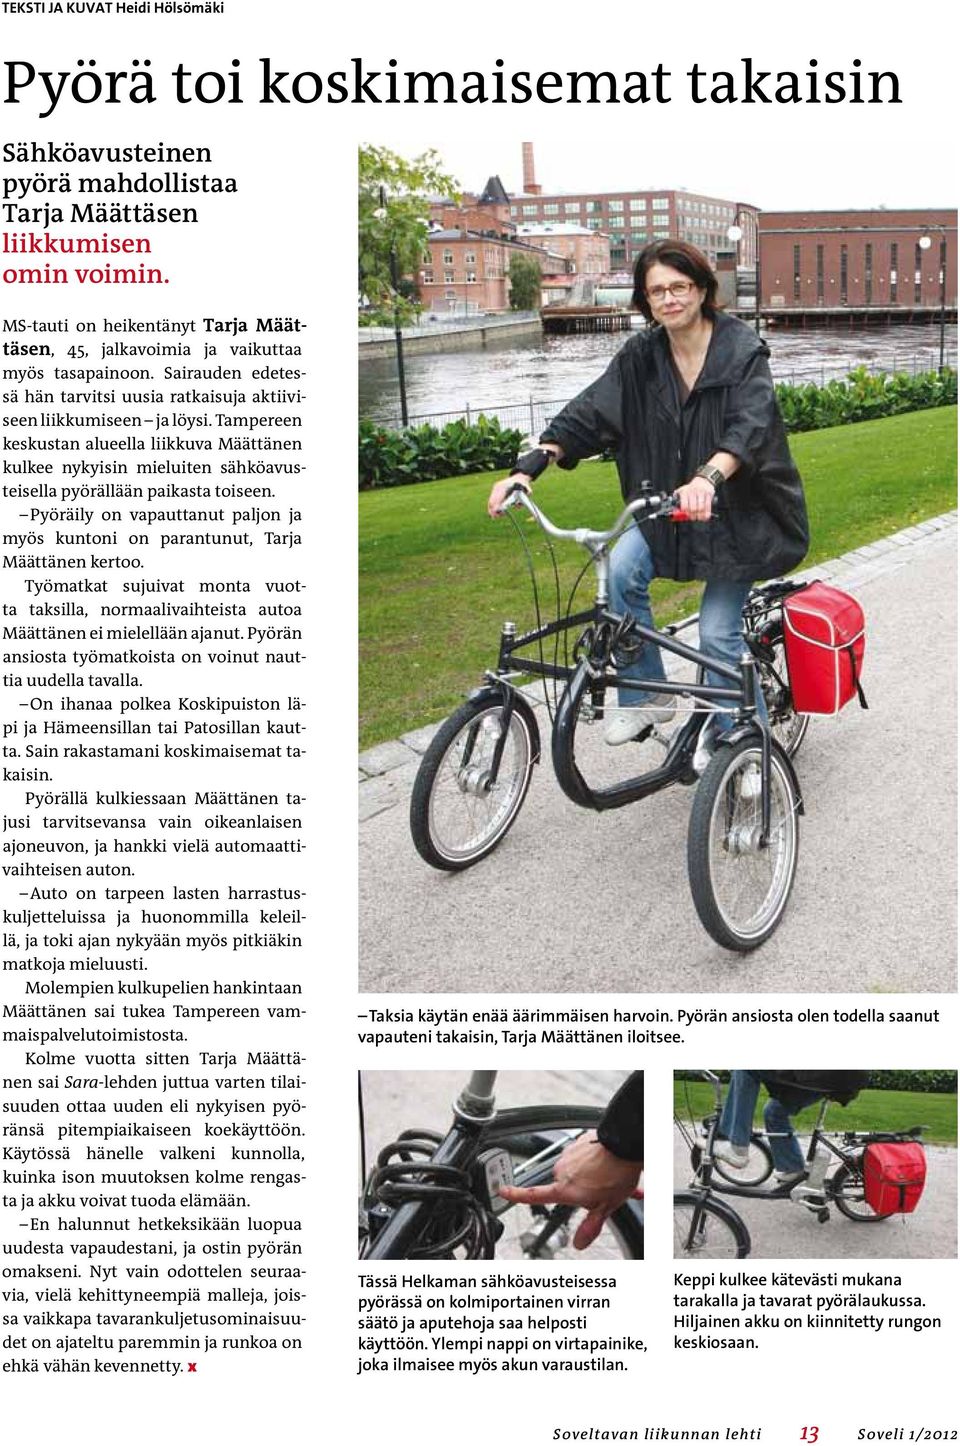 Tampereen keskustan alueella liikkuva Määttänen kulkee nykyisin mieluiten sähköavusteisella pyörällään paikasta toiseen.